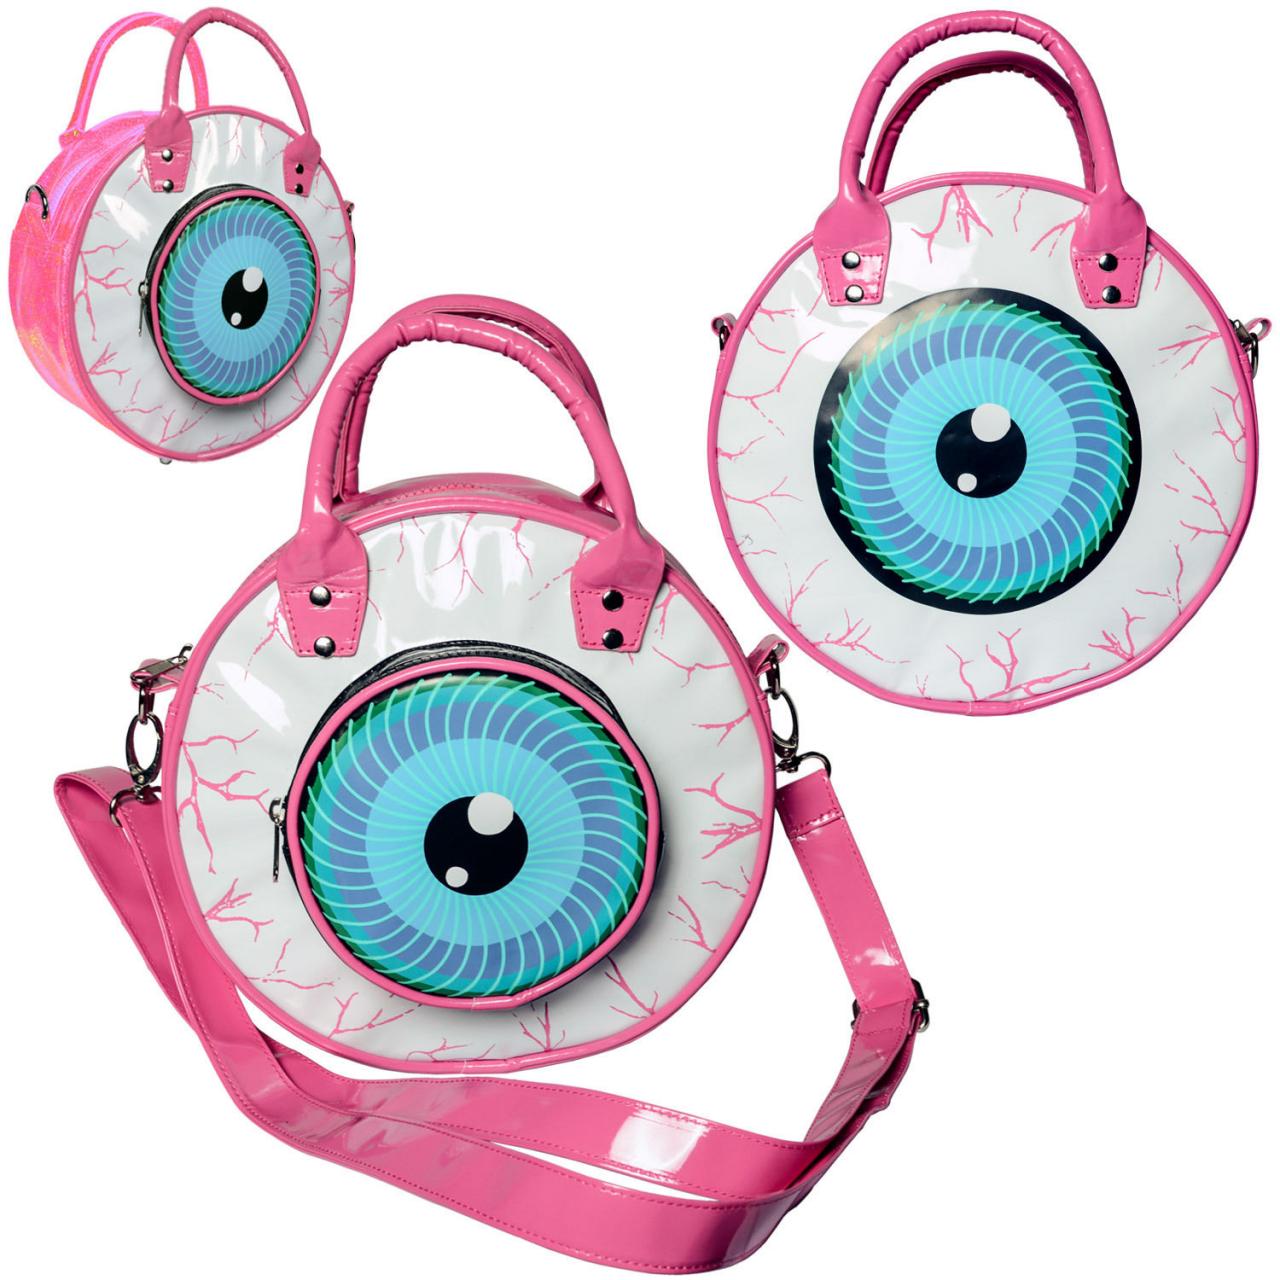 Eyeball Bag Pink Purse goth punk glam